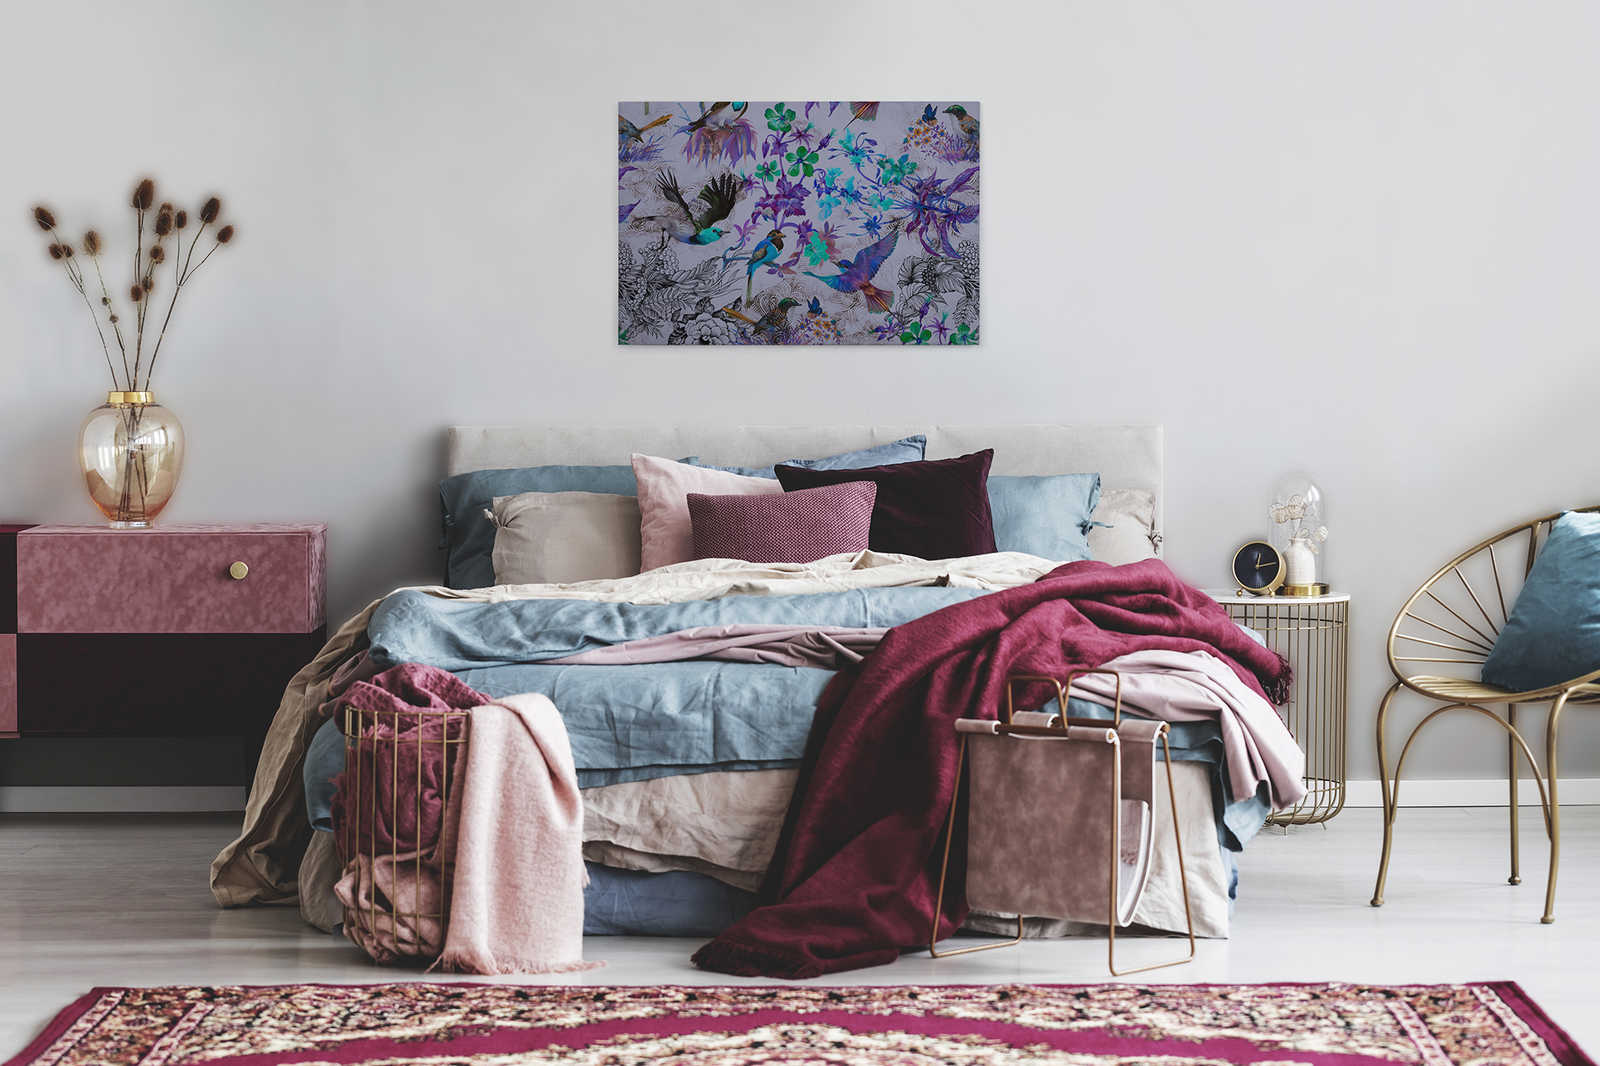             Cuadro en lienzo morado con flores y pájaros - 0,90 m x 0,60 m
        